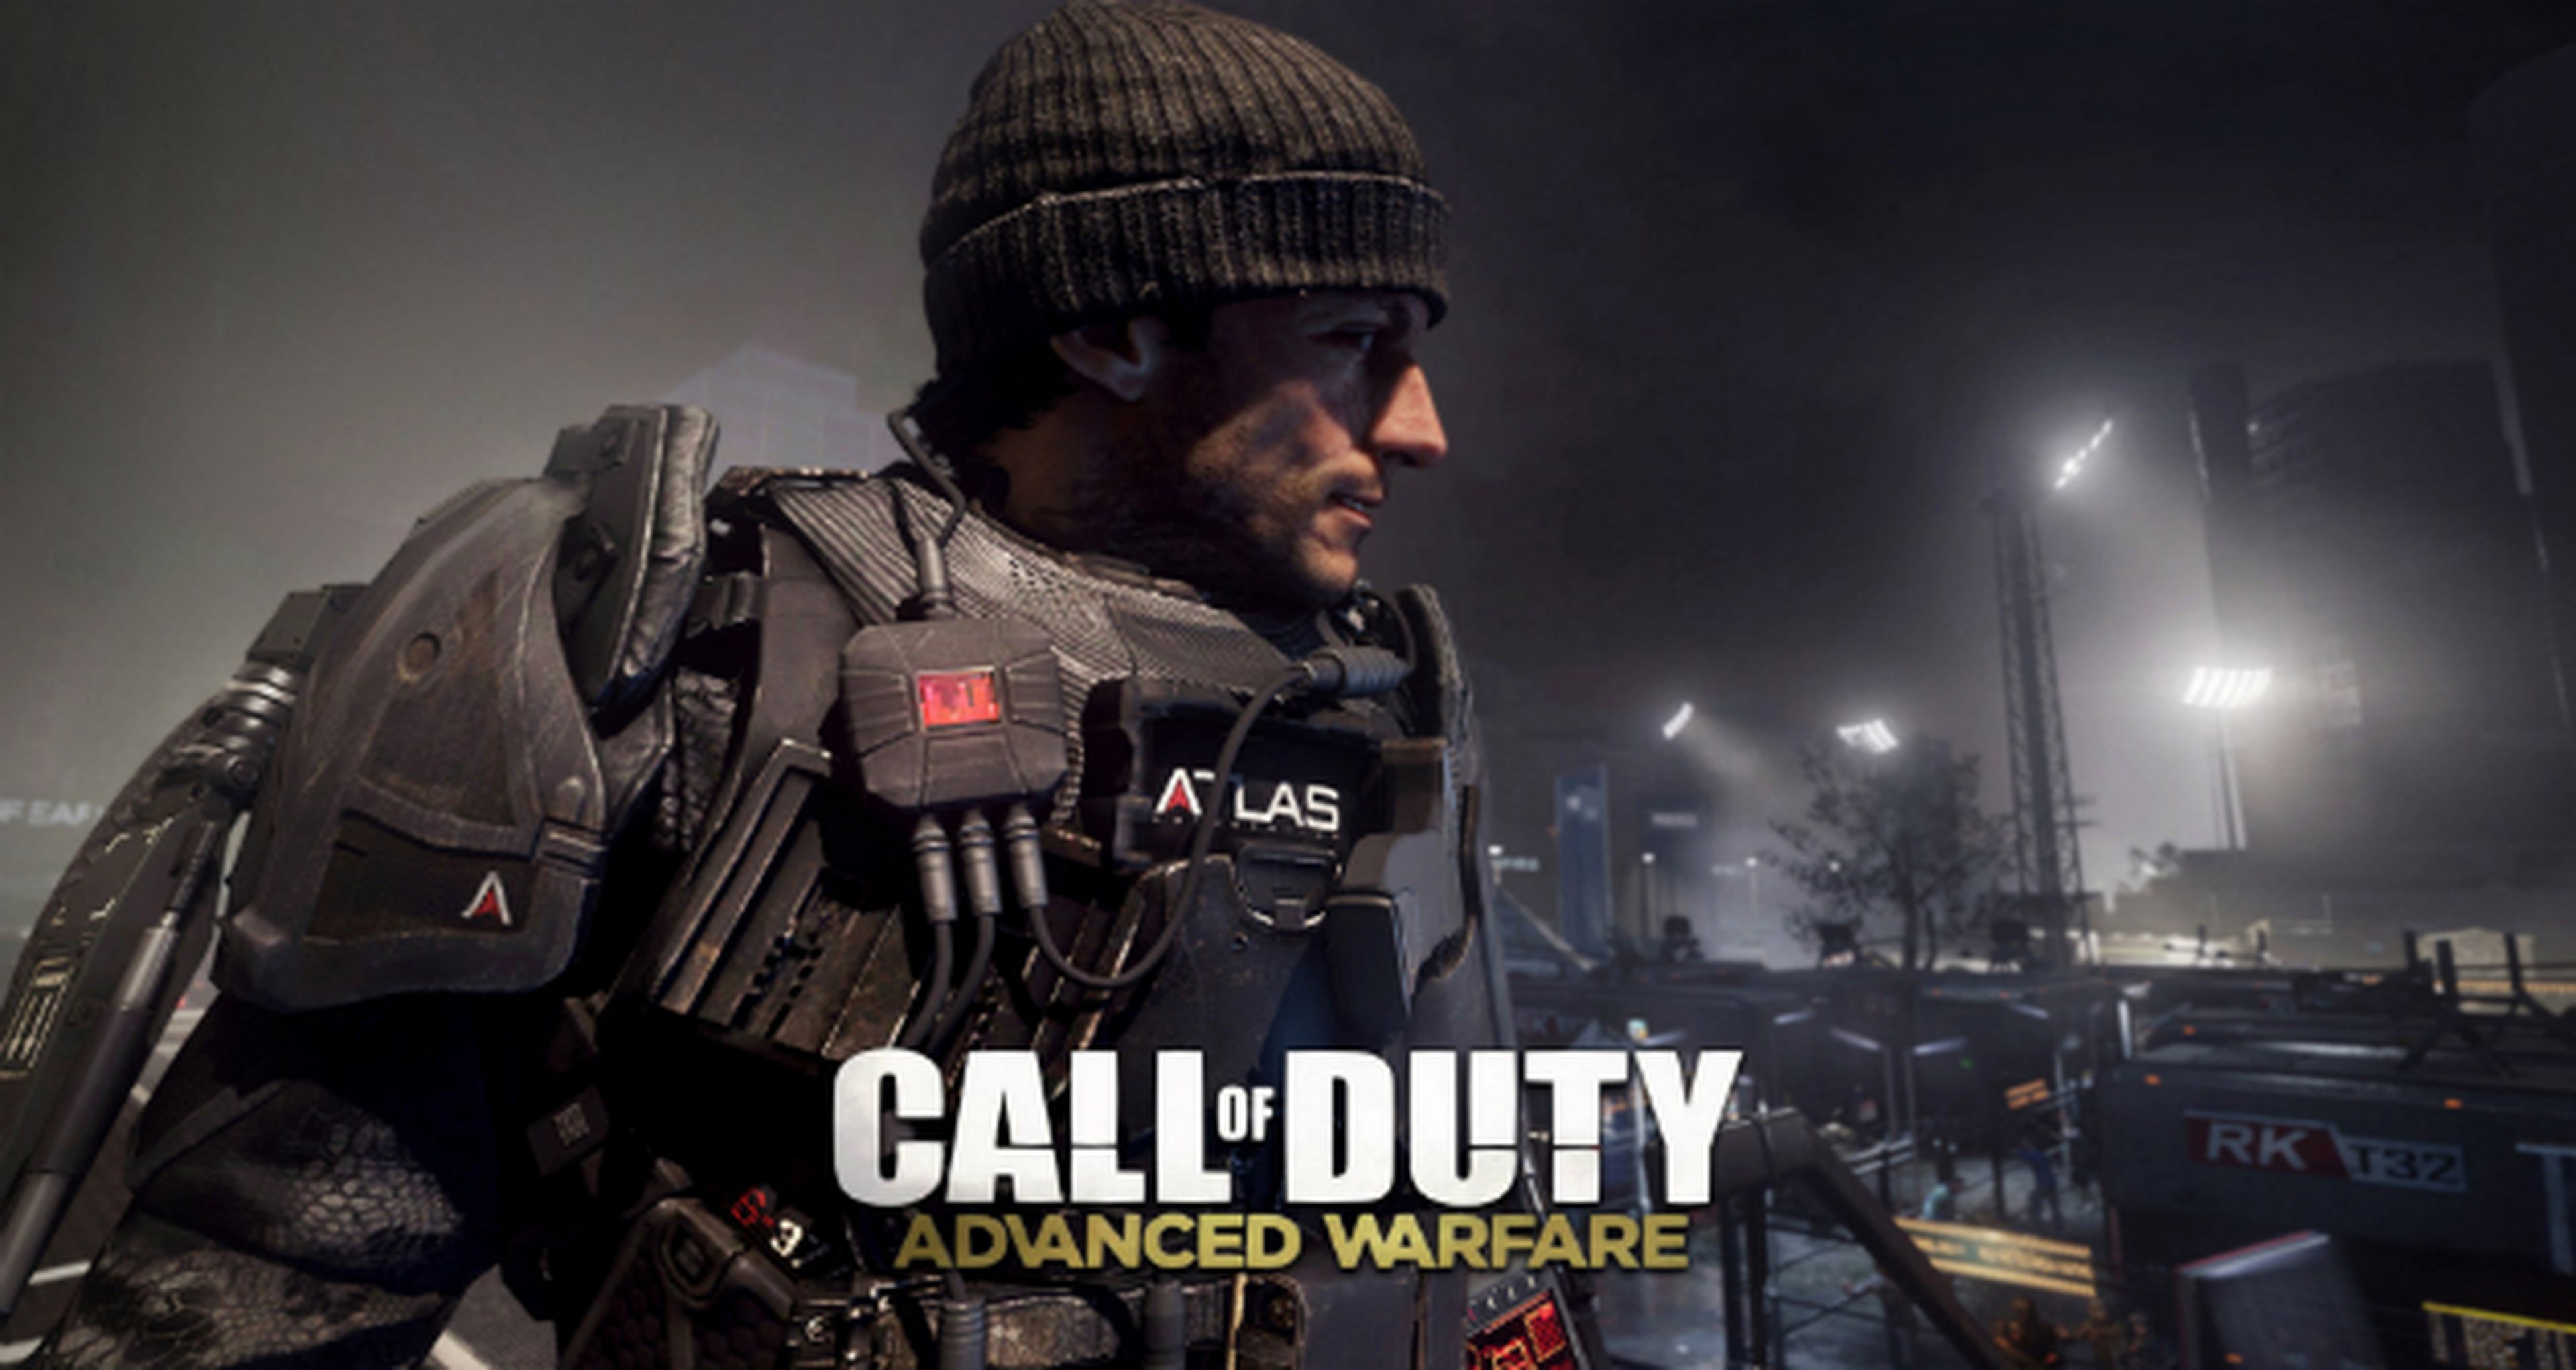 High Moon está desarrollando Call of Duty Advanced Warfare para PS3 y Xbox 360